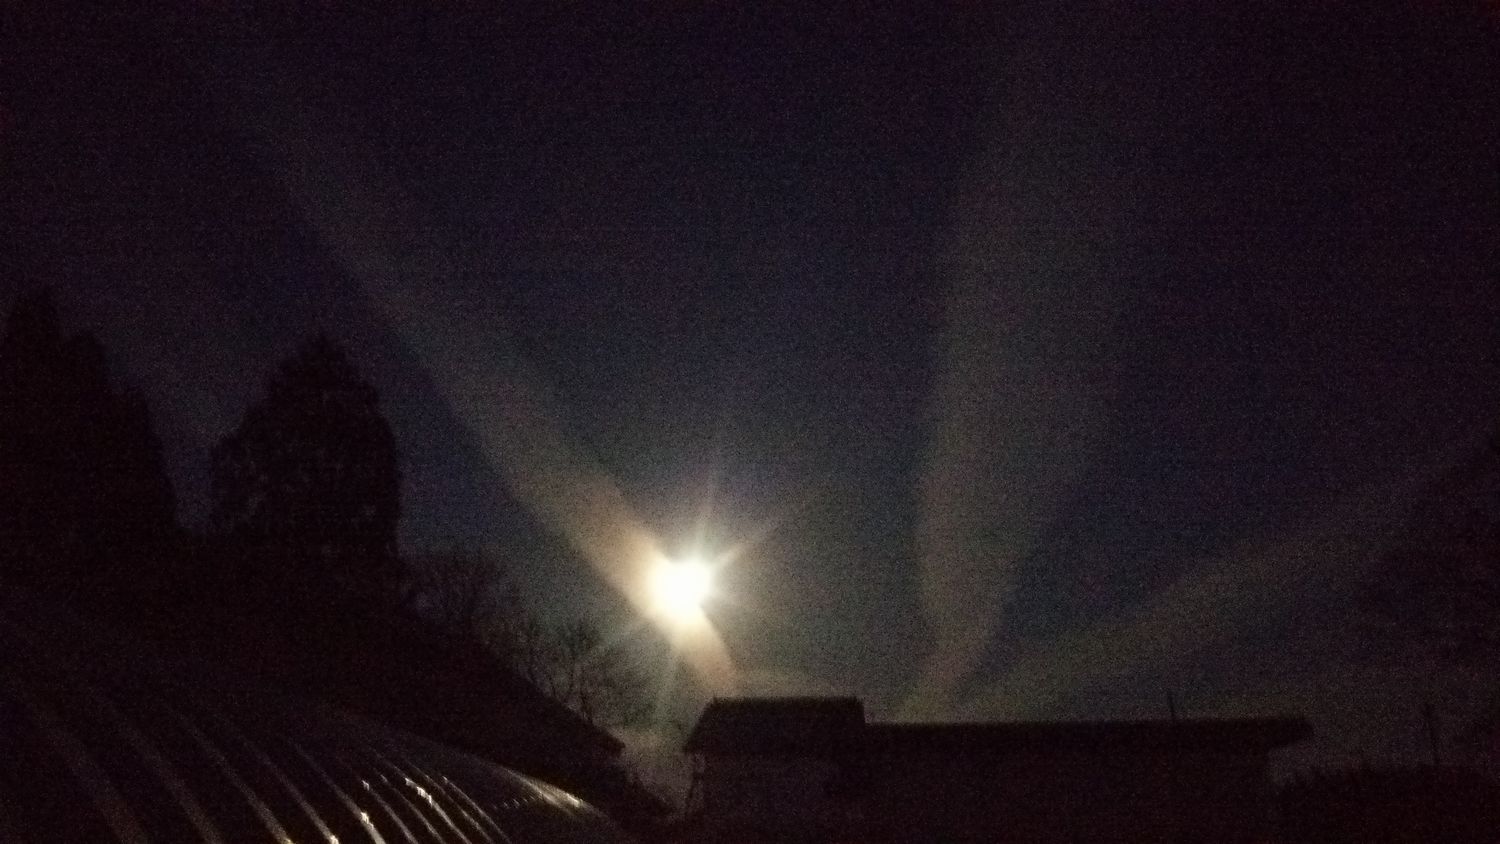 満月と飛行機雲 福ミミ写真部